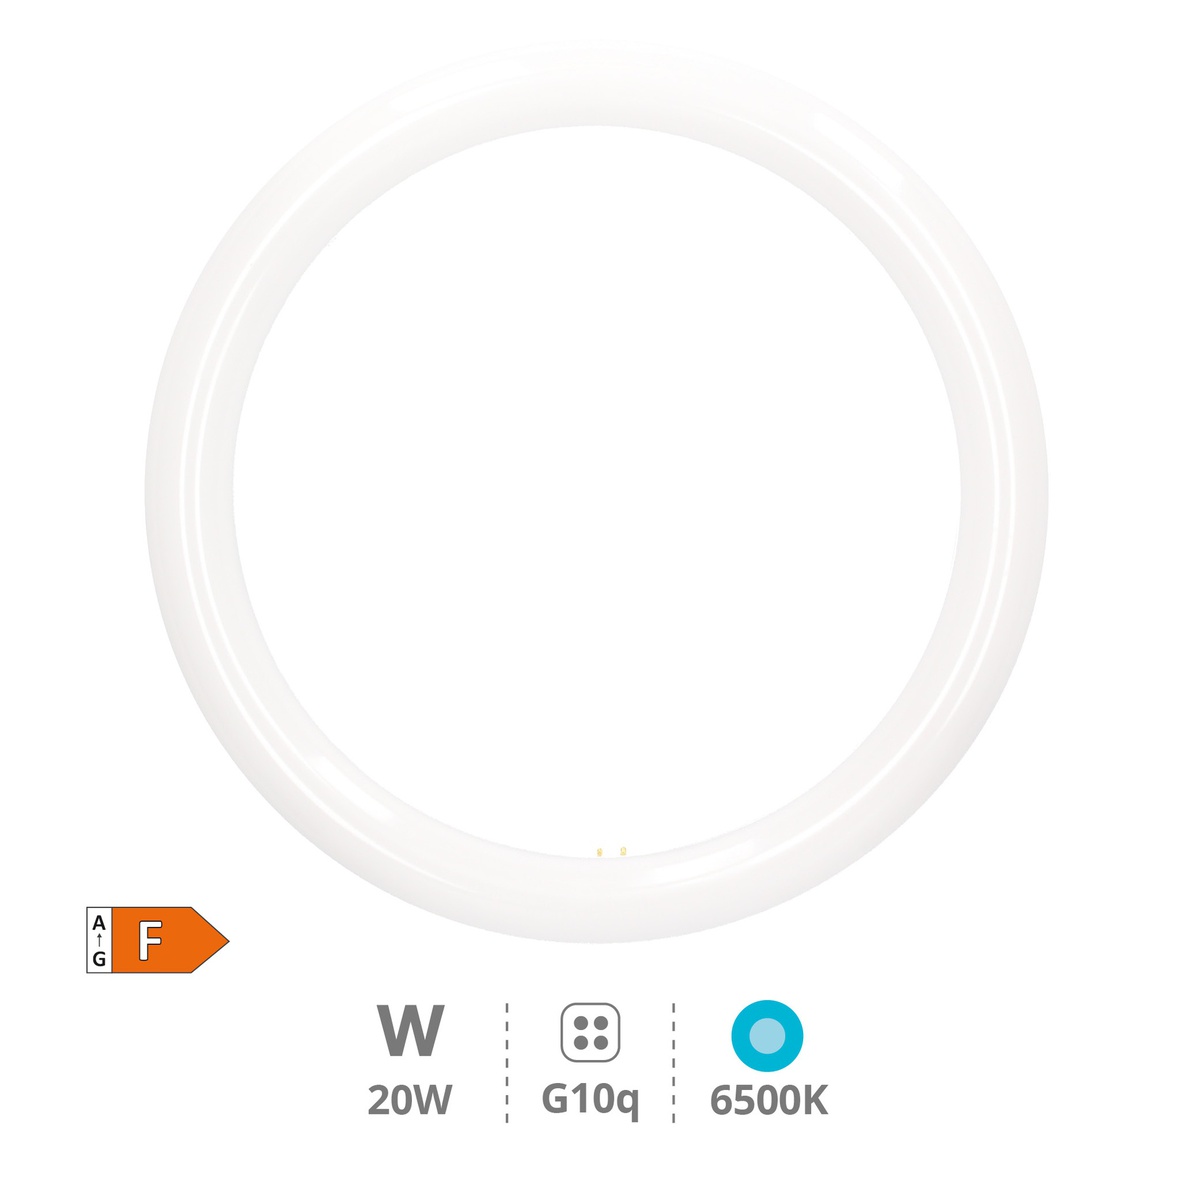 Tube circulaire LED Lisala 20W G10q 6500K